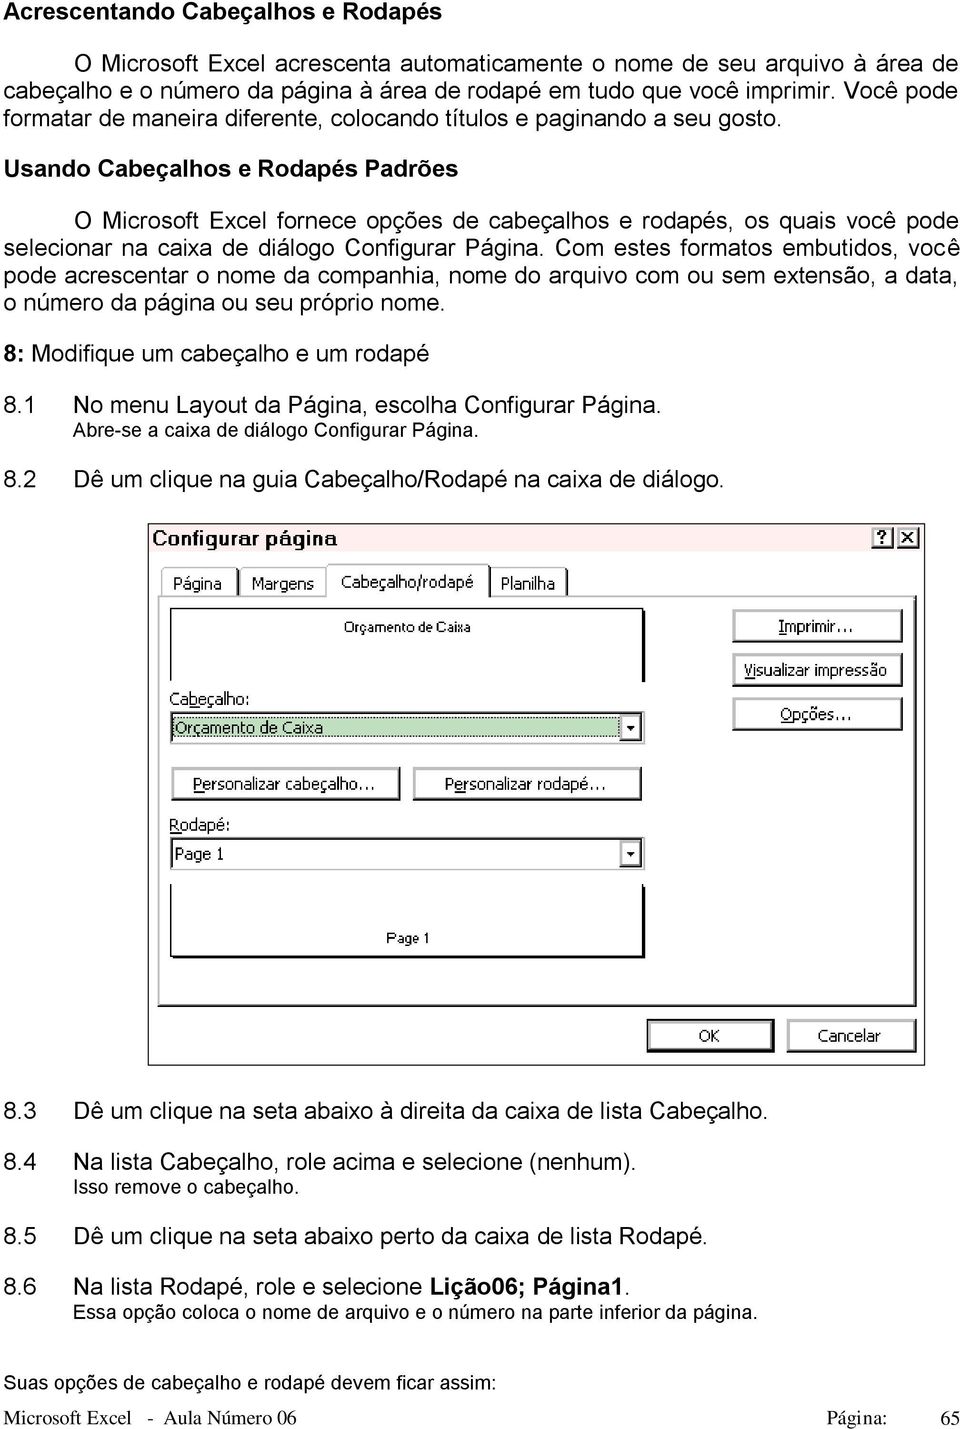 Usando Cabeçalhos e Rodapés Padrões O Microsoft Excel fornece opções de cabeçalhos e rodapés, os quais você pode selecionar na caixa de diálogo Configurar Página.